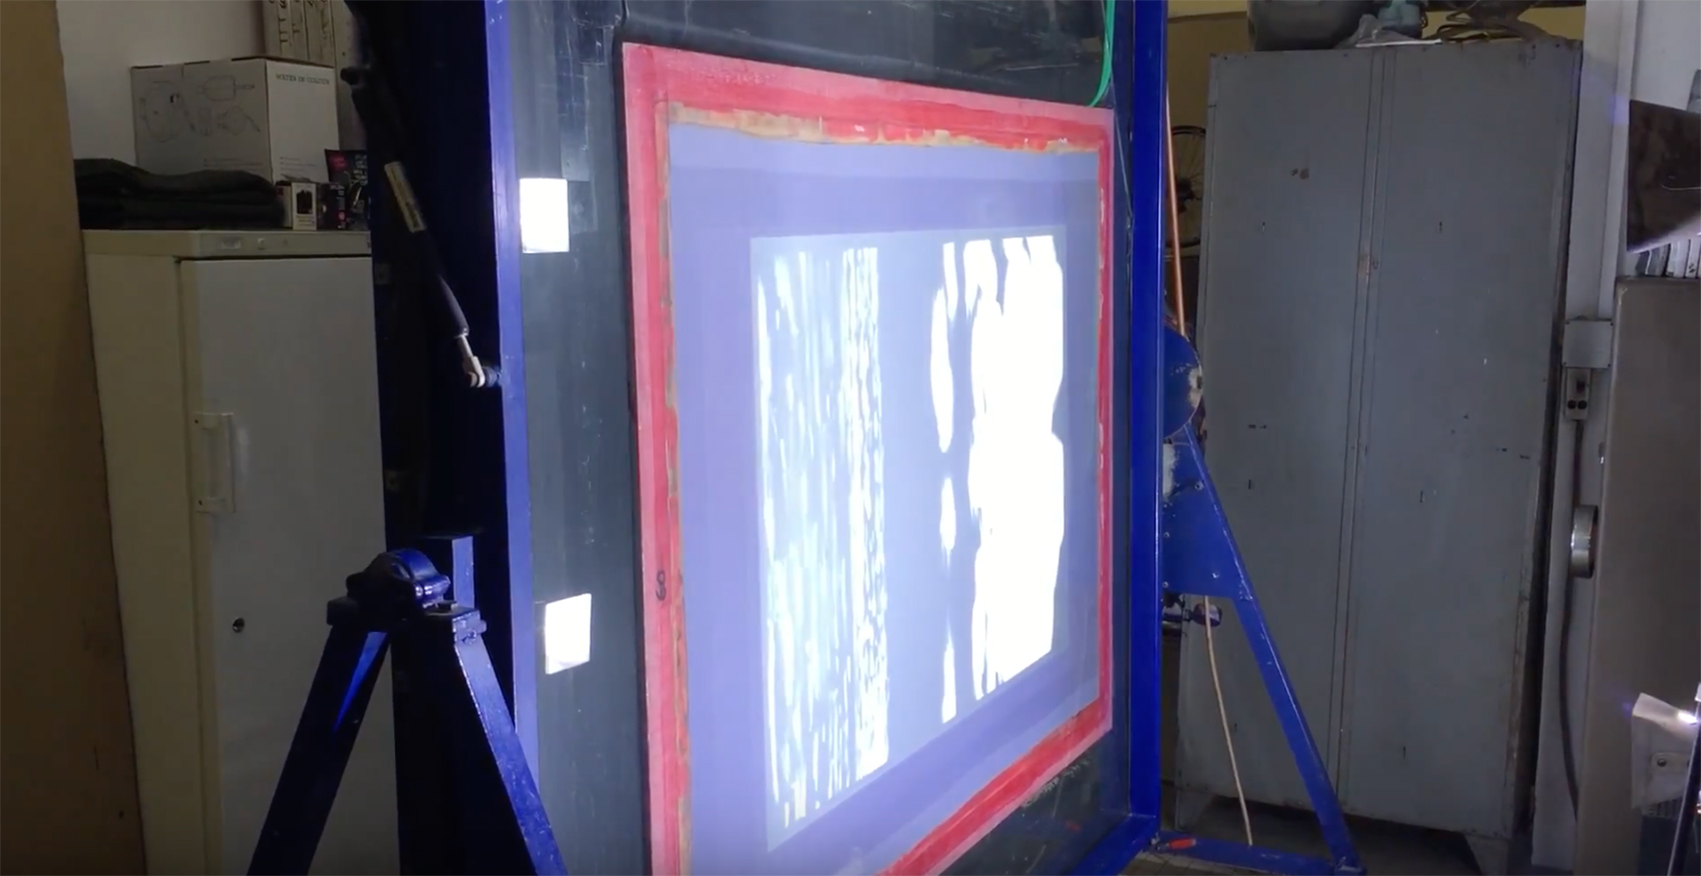 Video - Insolation d'un des écrans de la sérigraphie Parasol de Alain Séchas